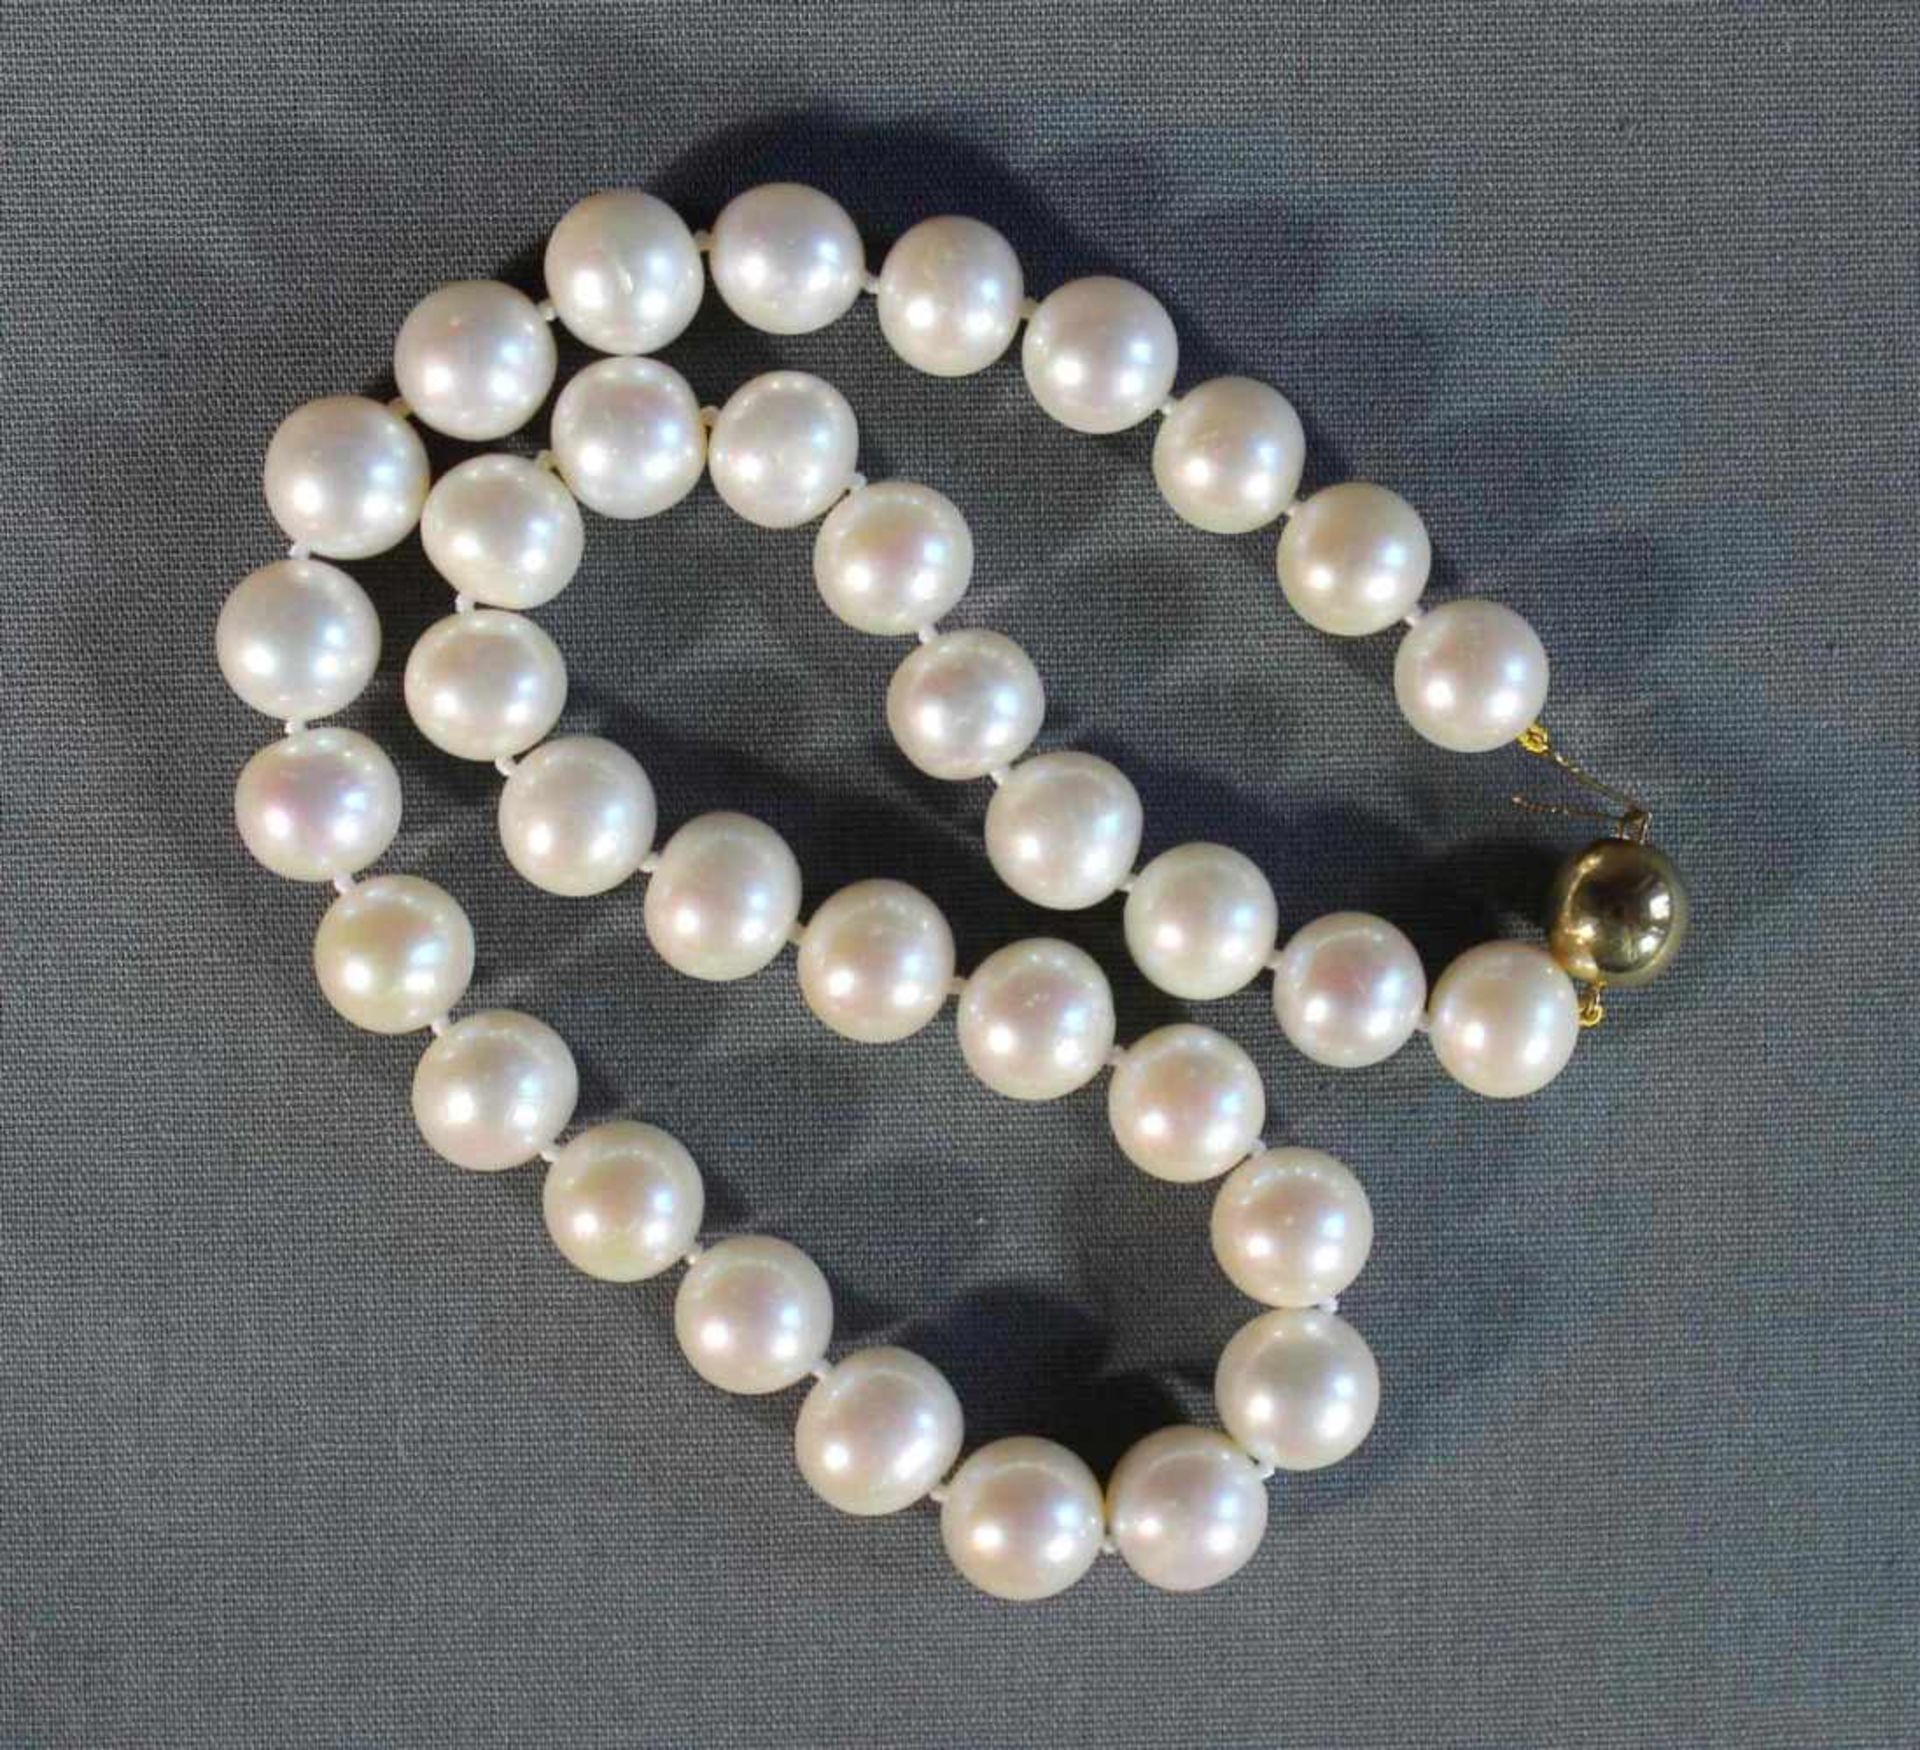 1 Perlenkette, große weiße Perlen im schönen Lüster, mit Kugelverschluß 8kt.Gg (333/000), L ca.